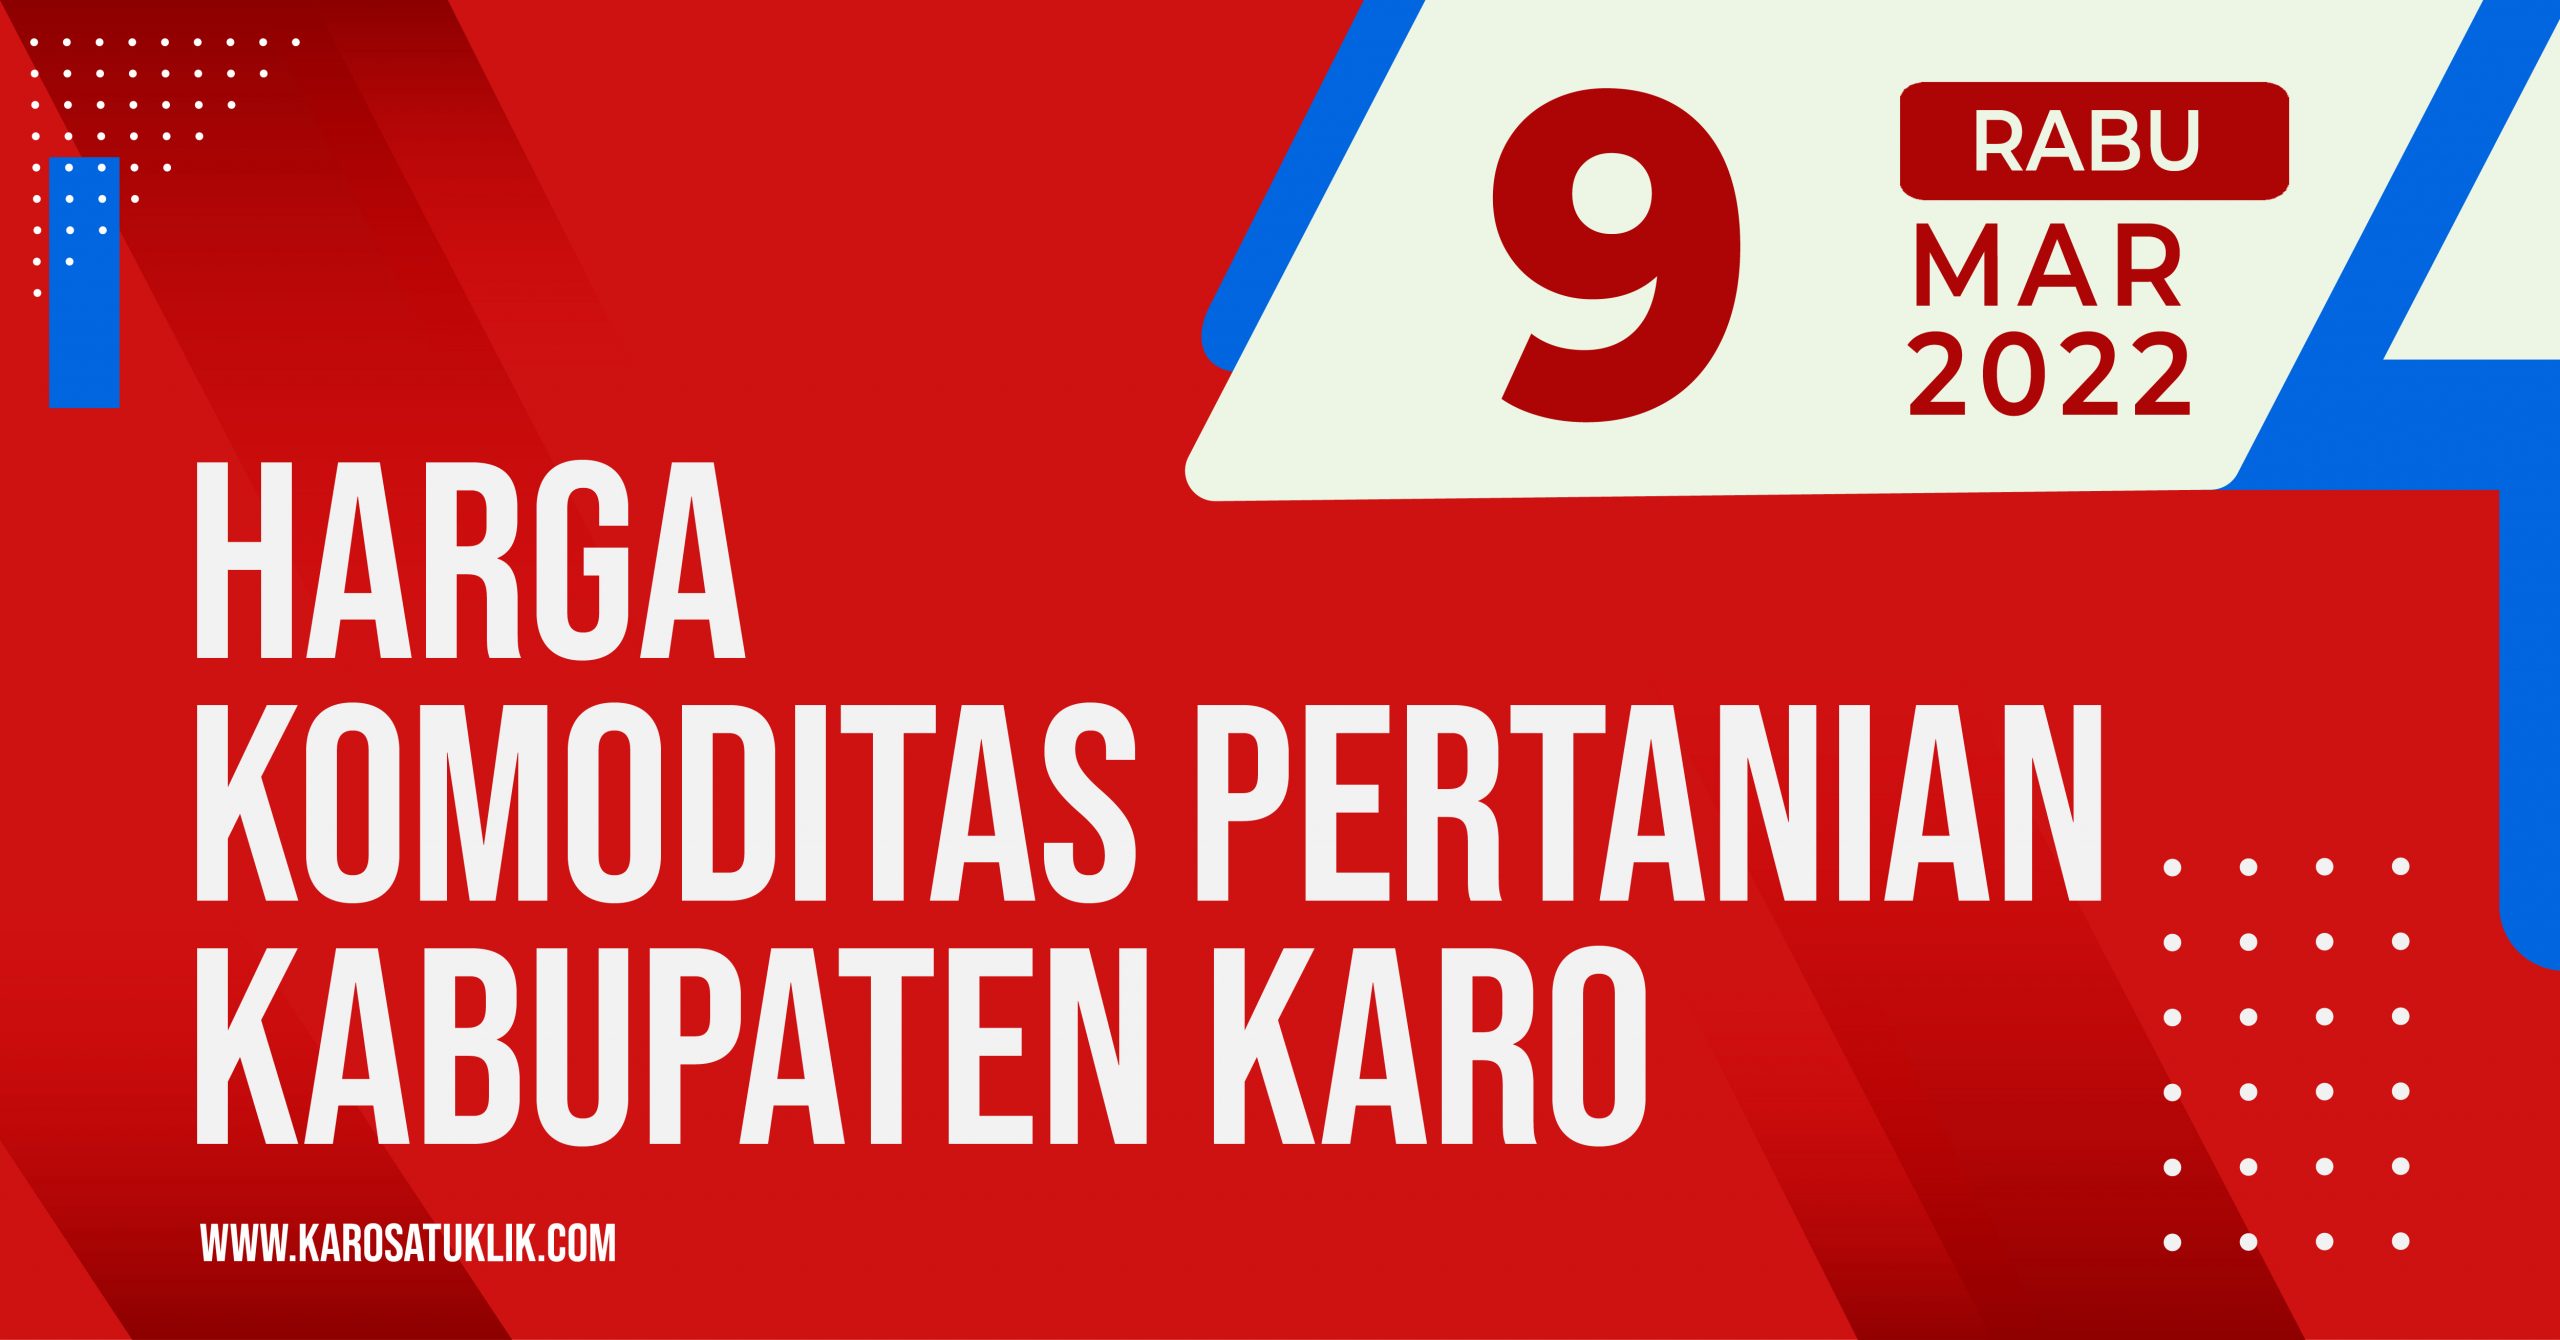 Daftar Harga Komoditas Pertanian Kabupaten Karo, 9 Maret 2022